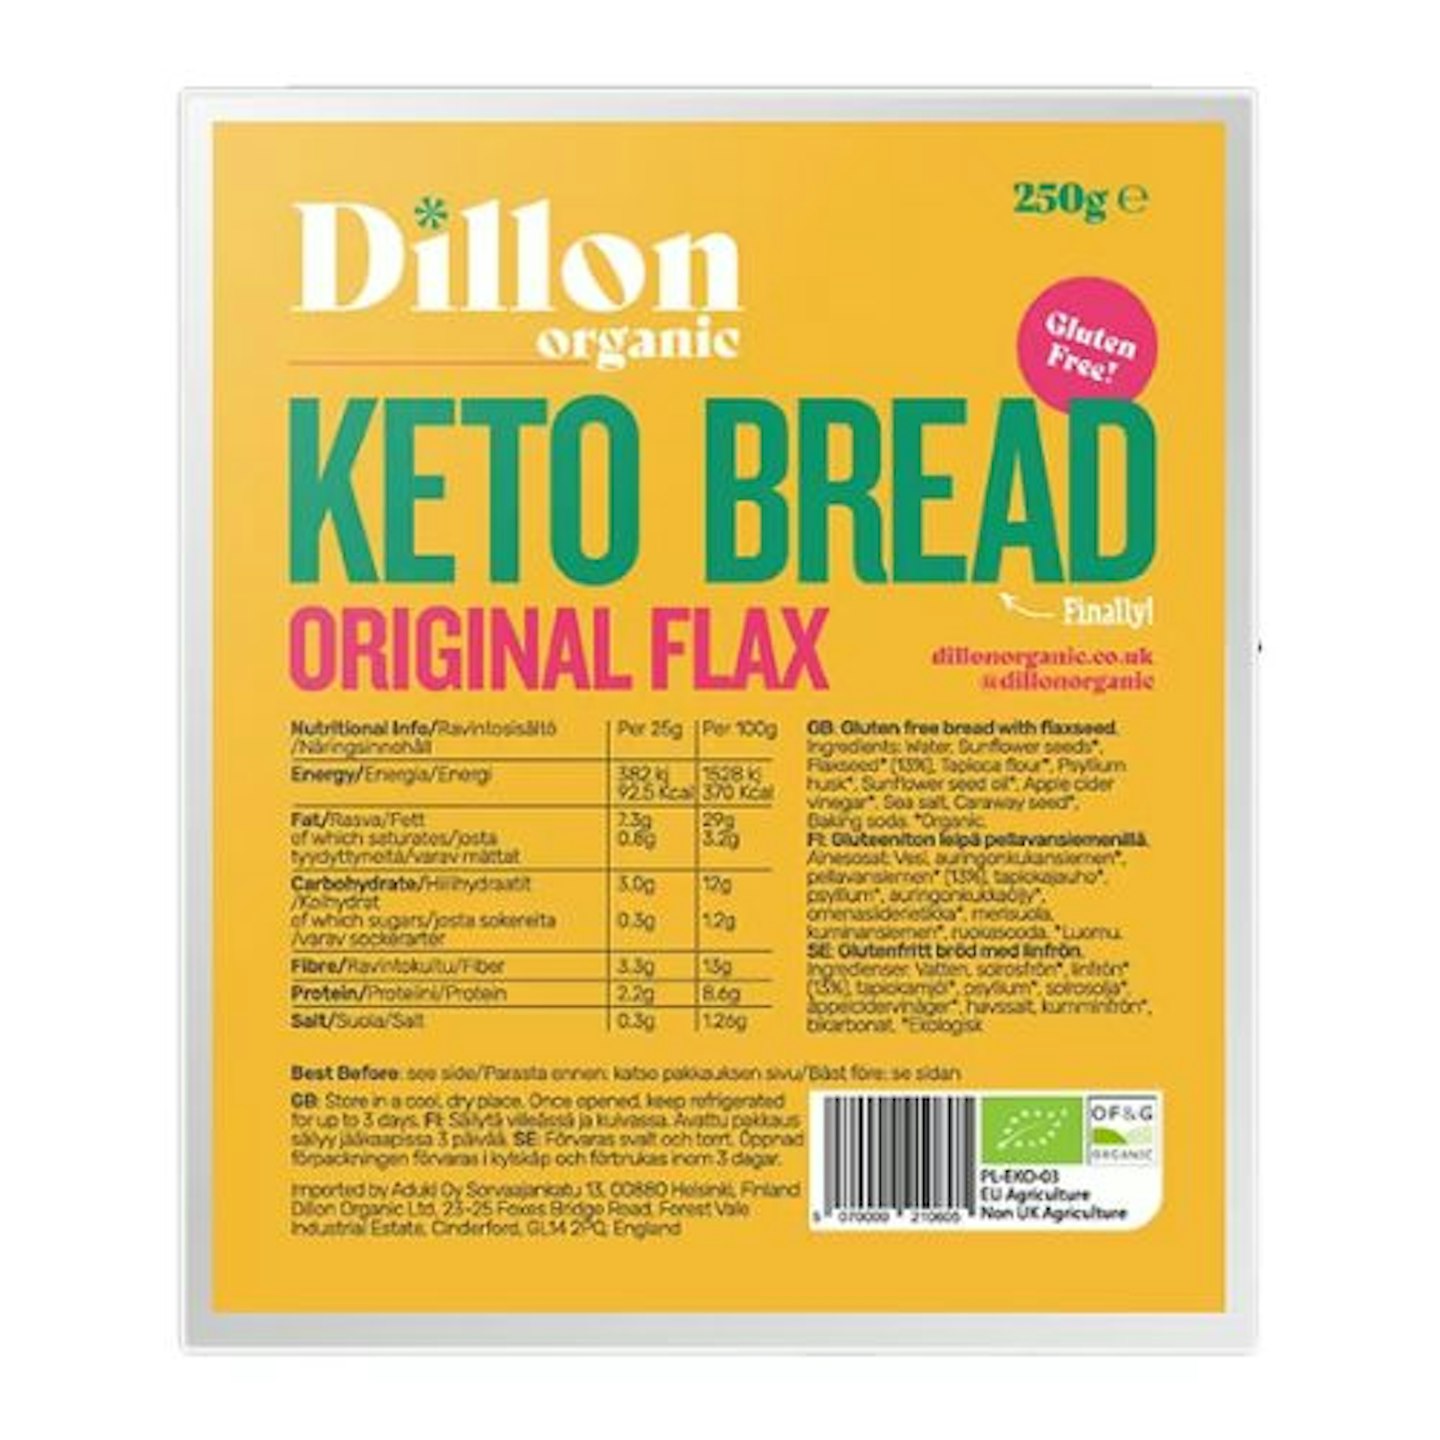 Dillon Organic Original Flax Keto Bread